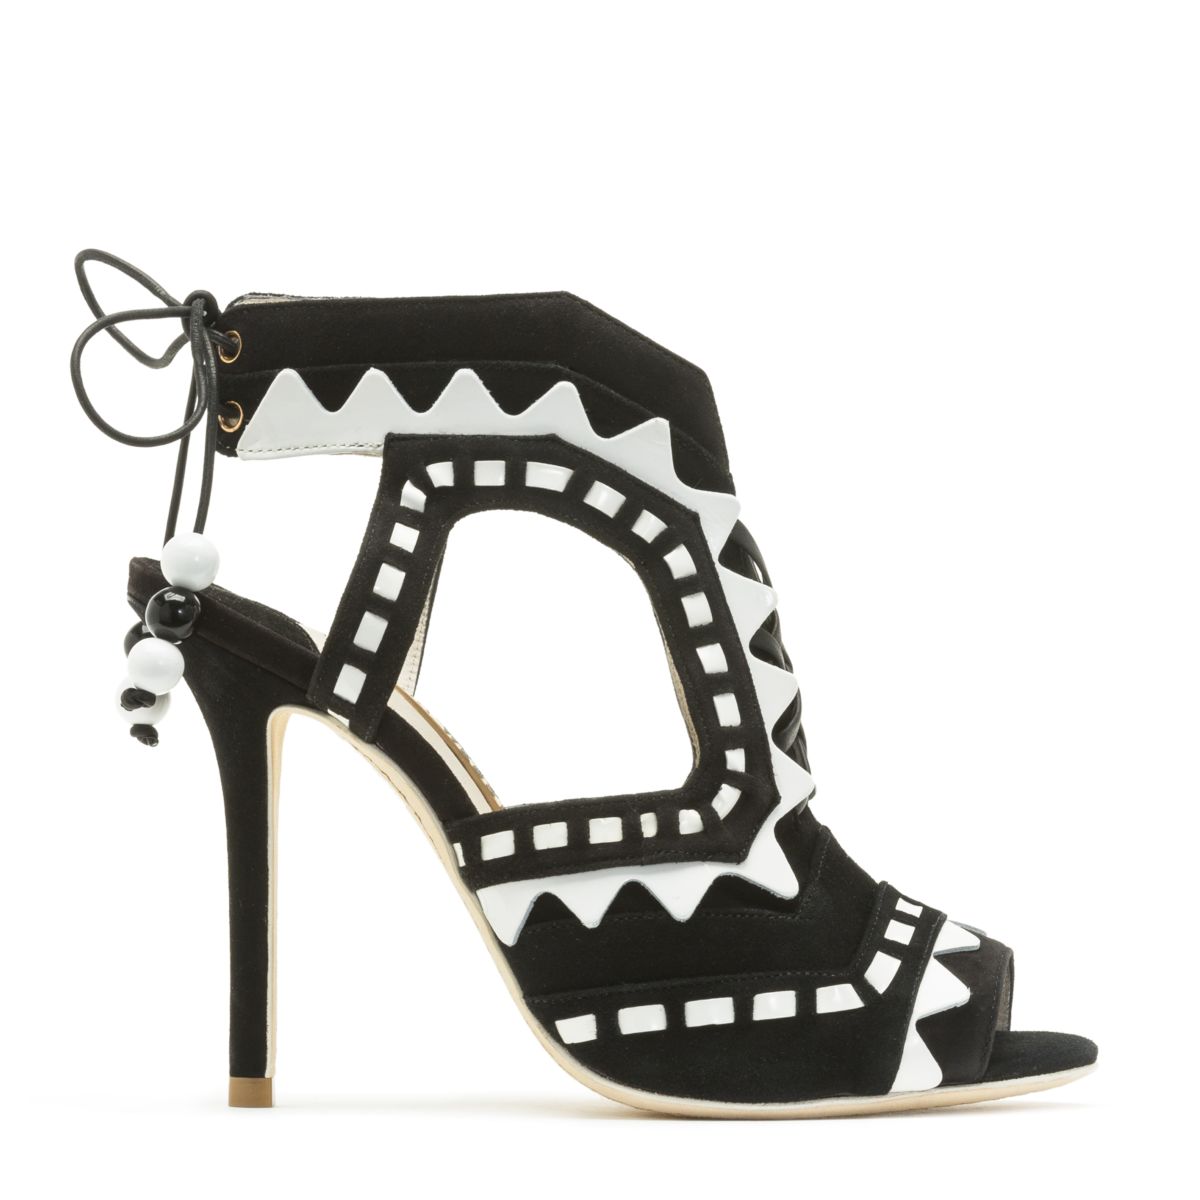 sophia webster's heels